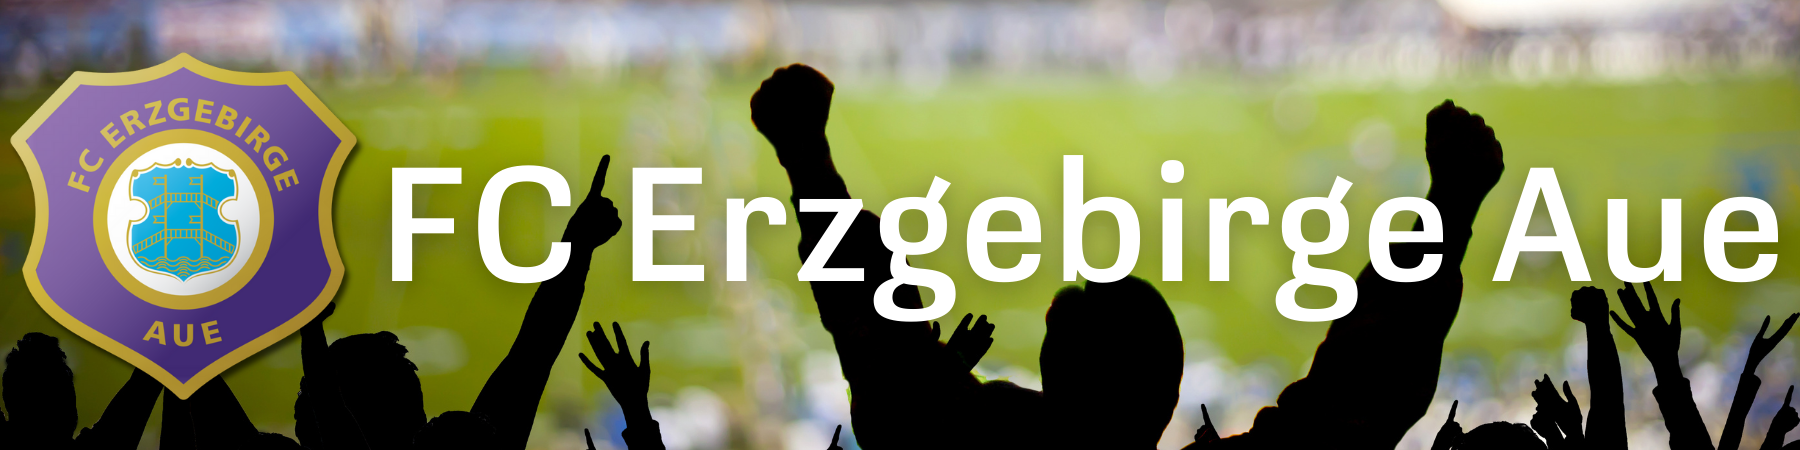 FC Erzgebirge Aue Freie Presse